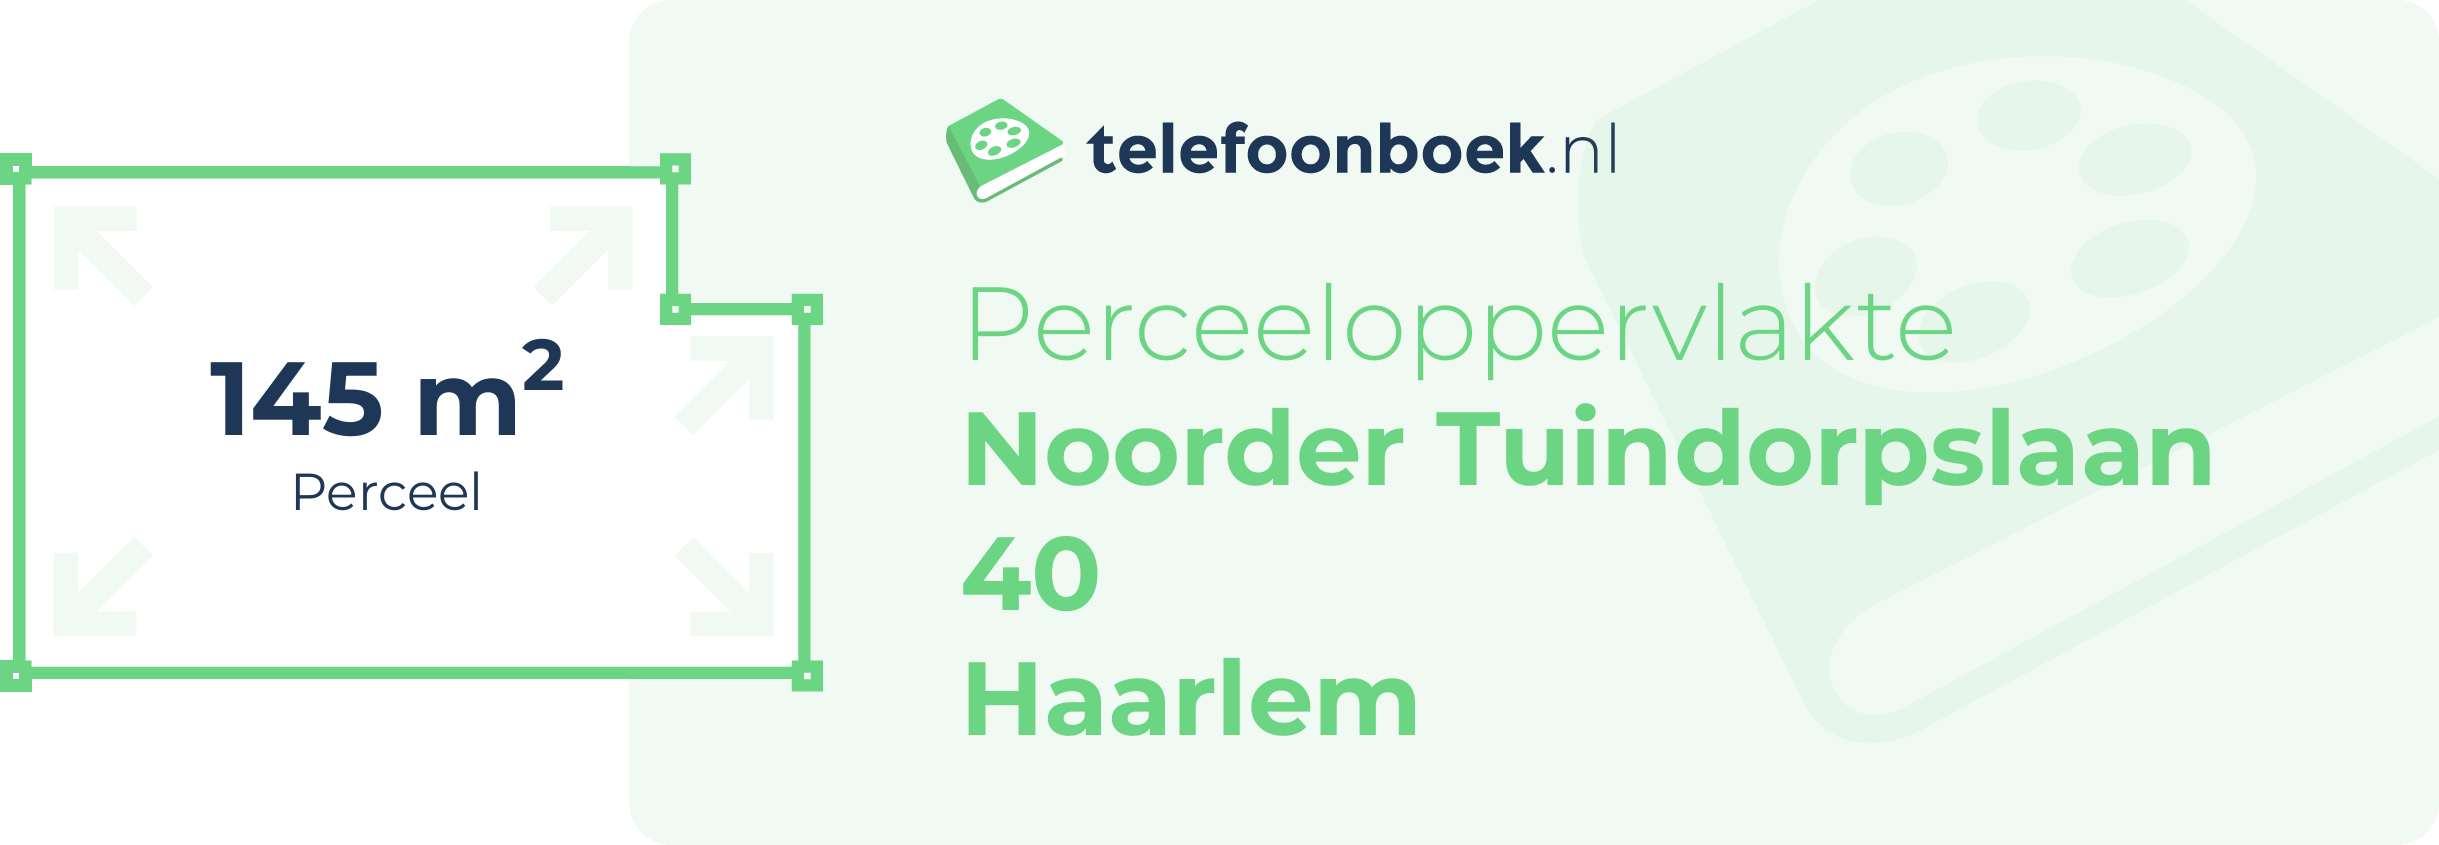 Perceeloppervlakte Noorder Tuindorpslaan 40 Haarlem